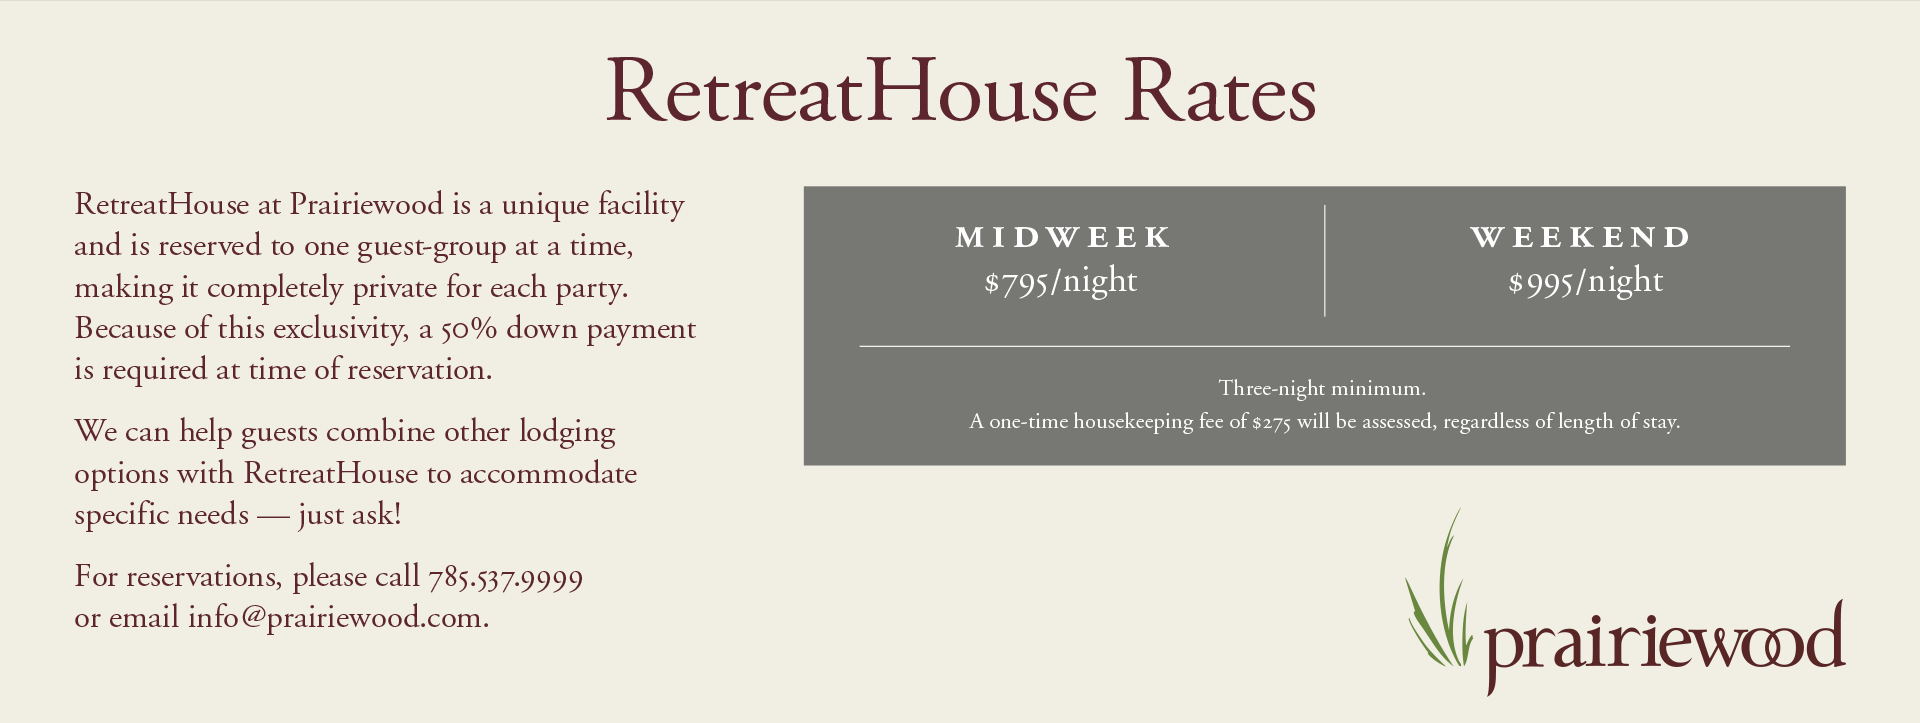 RetreatHouse Rates